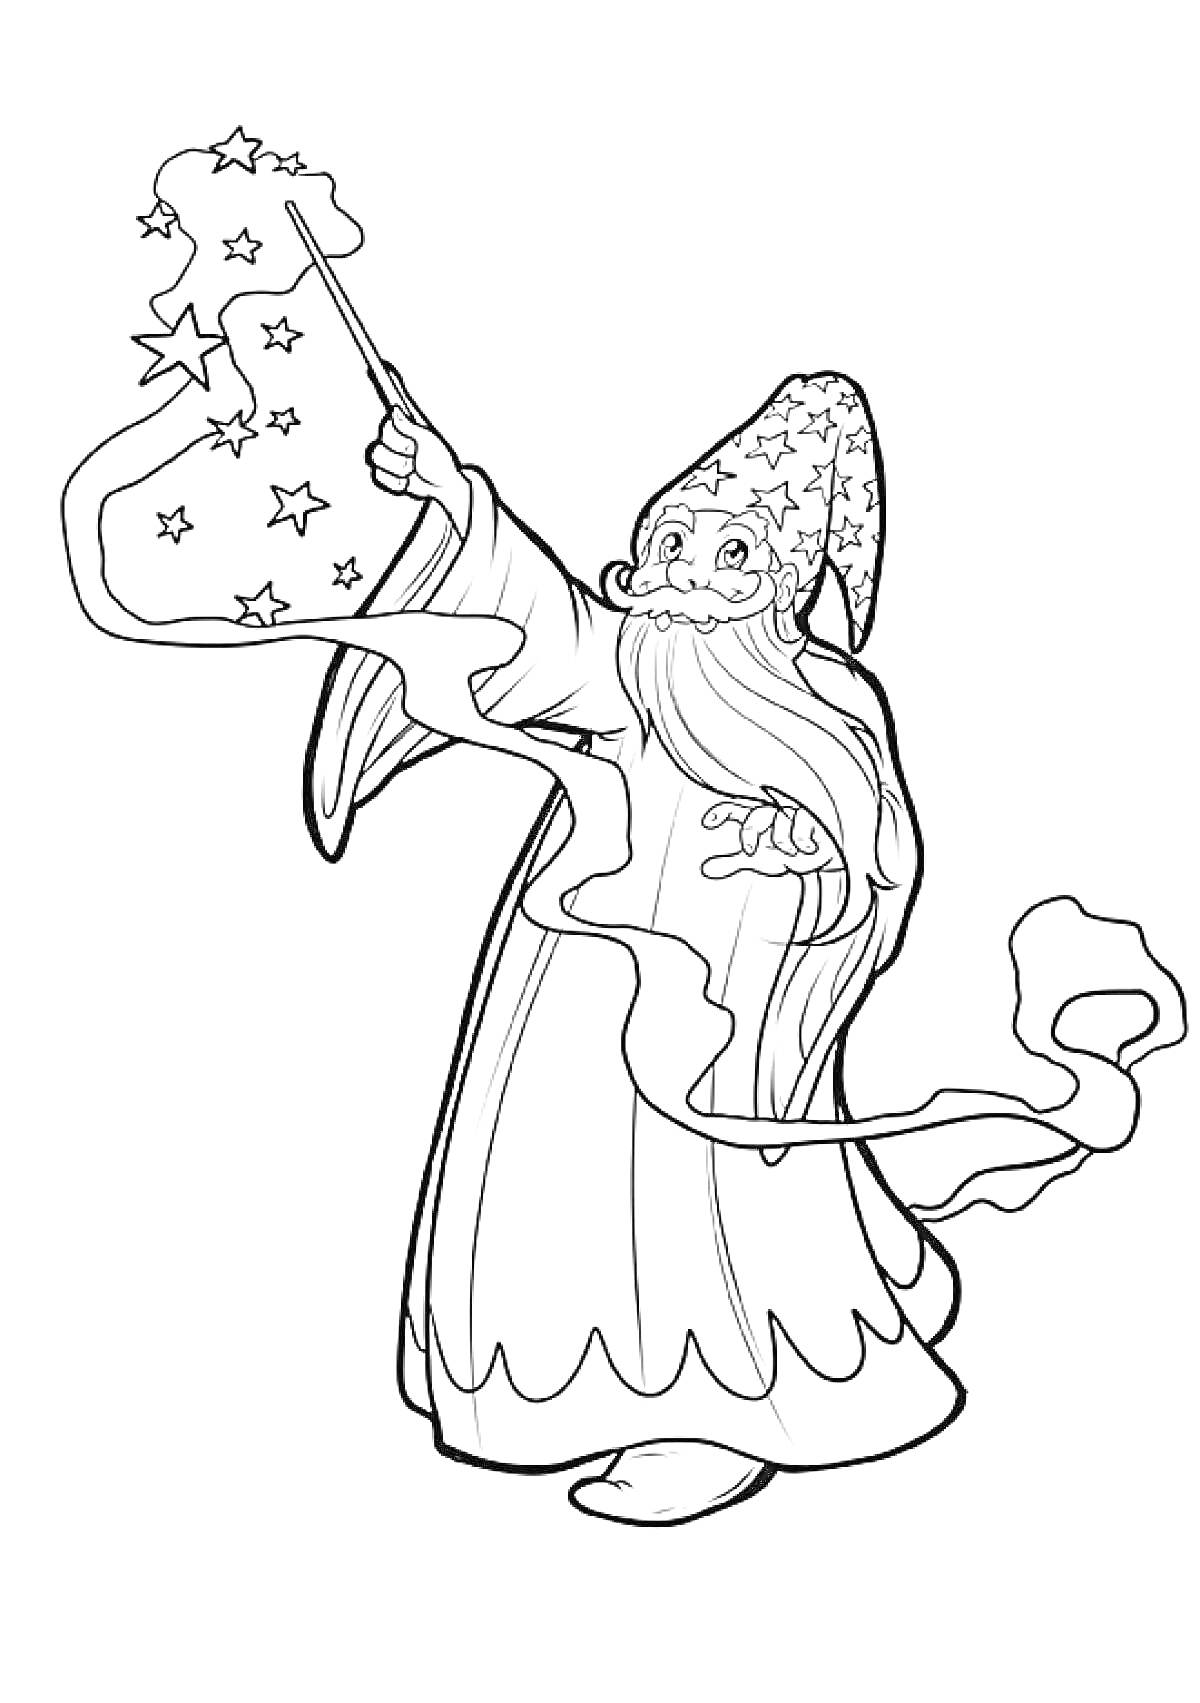 Волшебник с длинной бородой, в остроконечной шляпе с узорами, держащий волшебную палочку, из которой вылетают звёзды и ленты